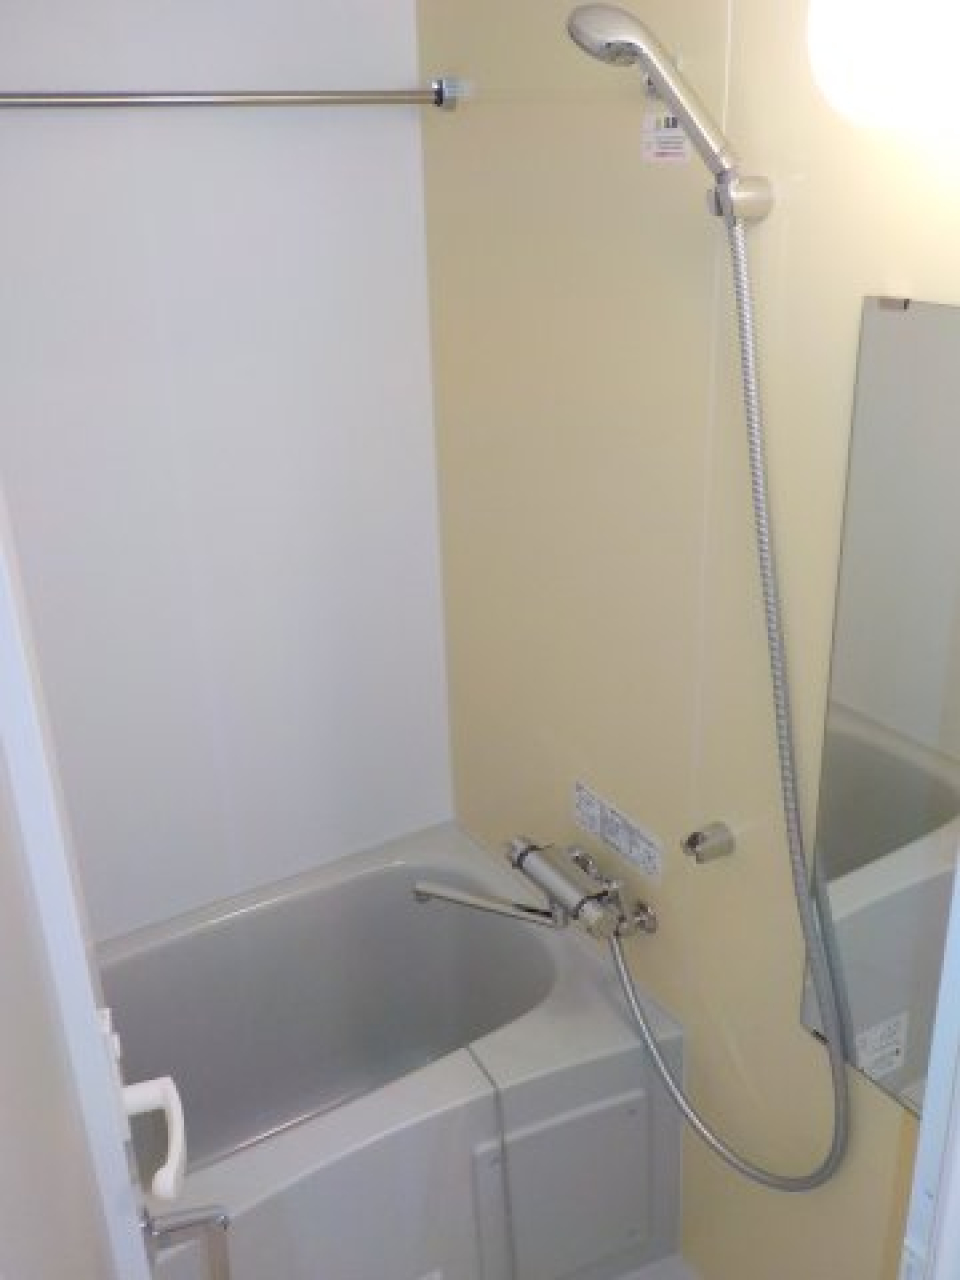 柔らかなパネルが採用された浴室で、落ち着いた空間でお風呂を楽しめそうです。